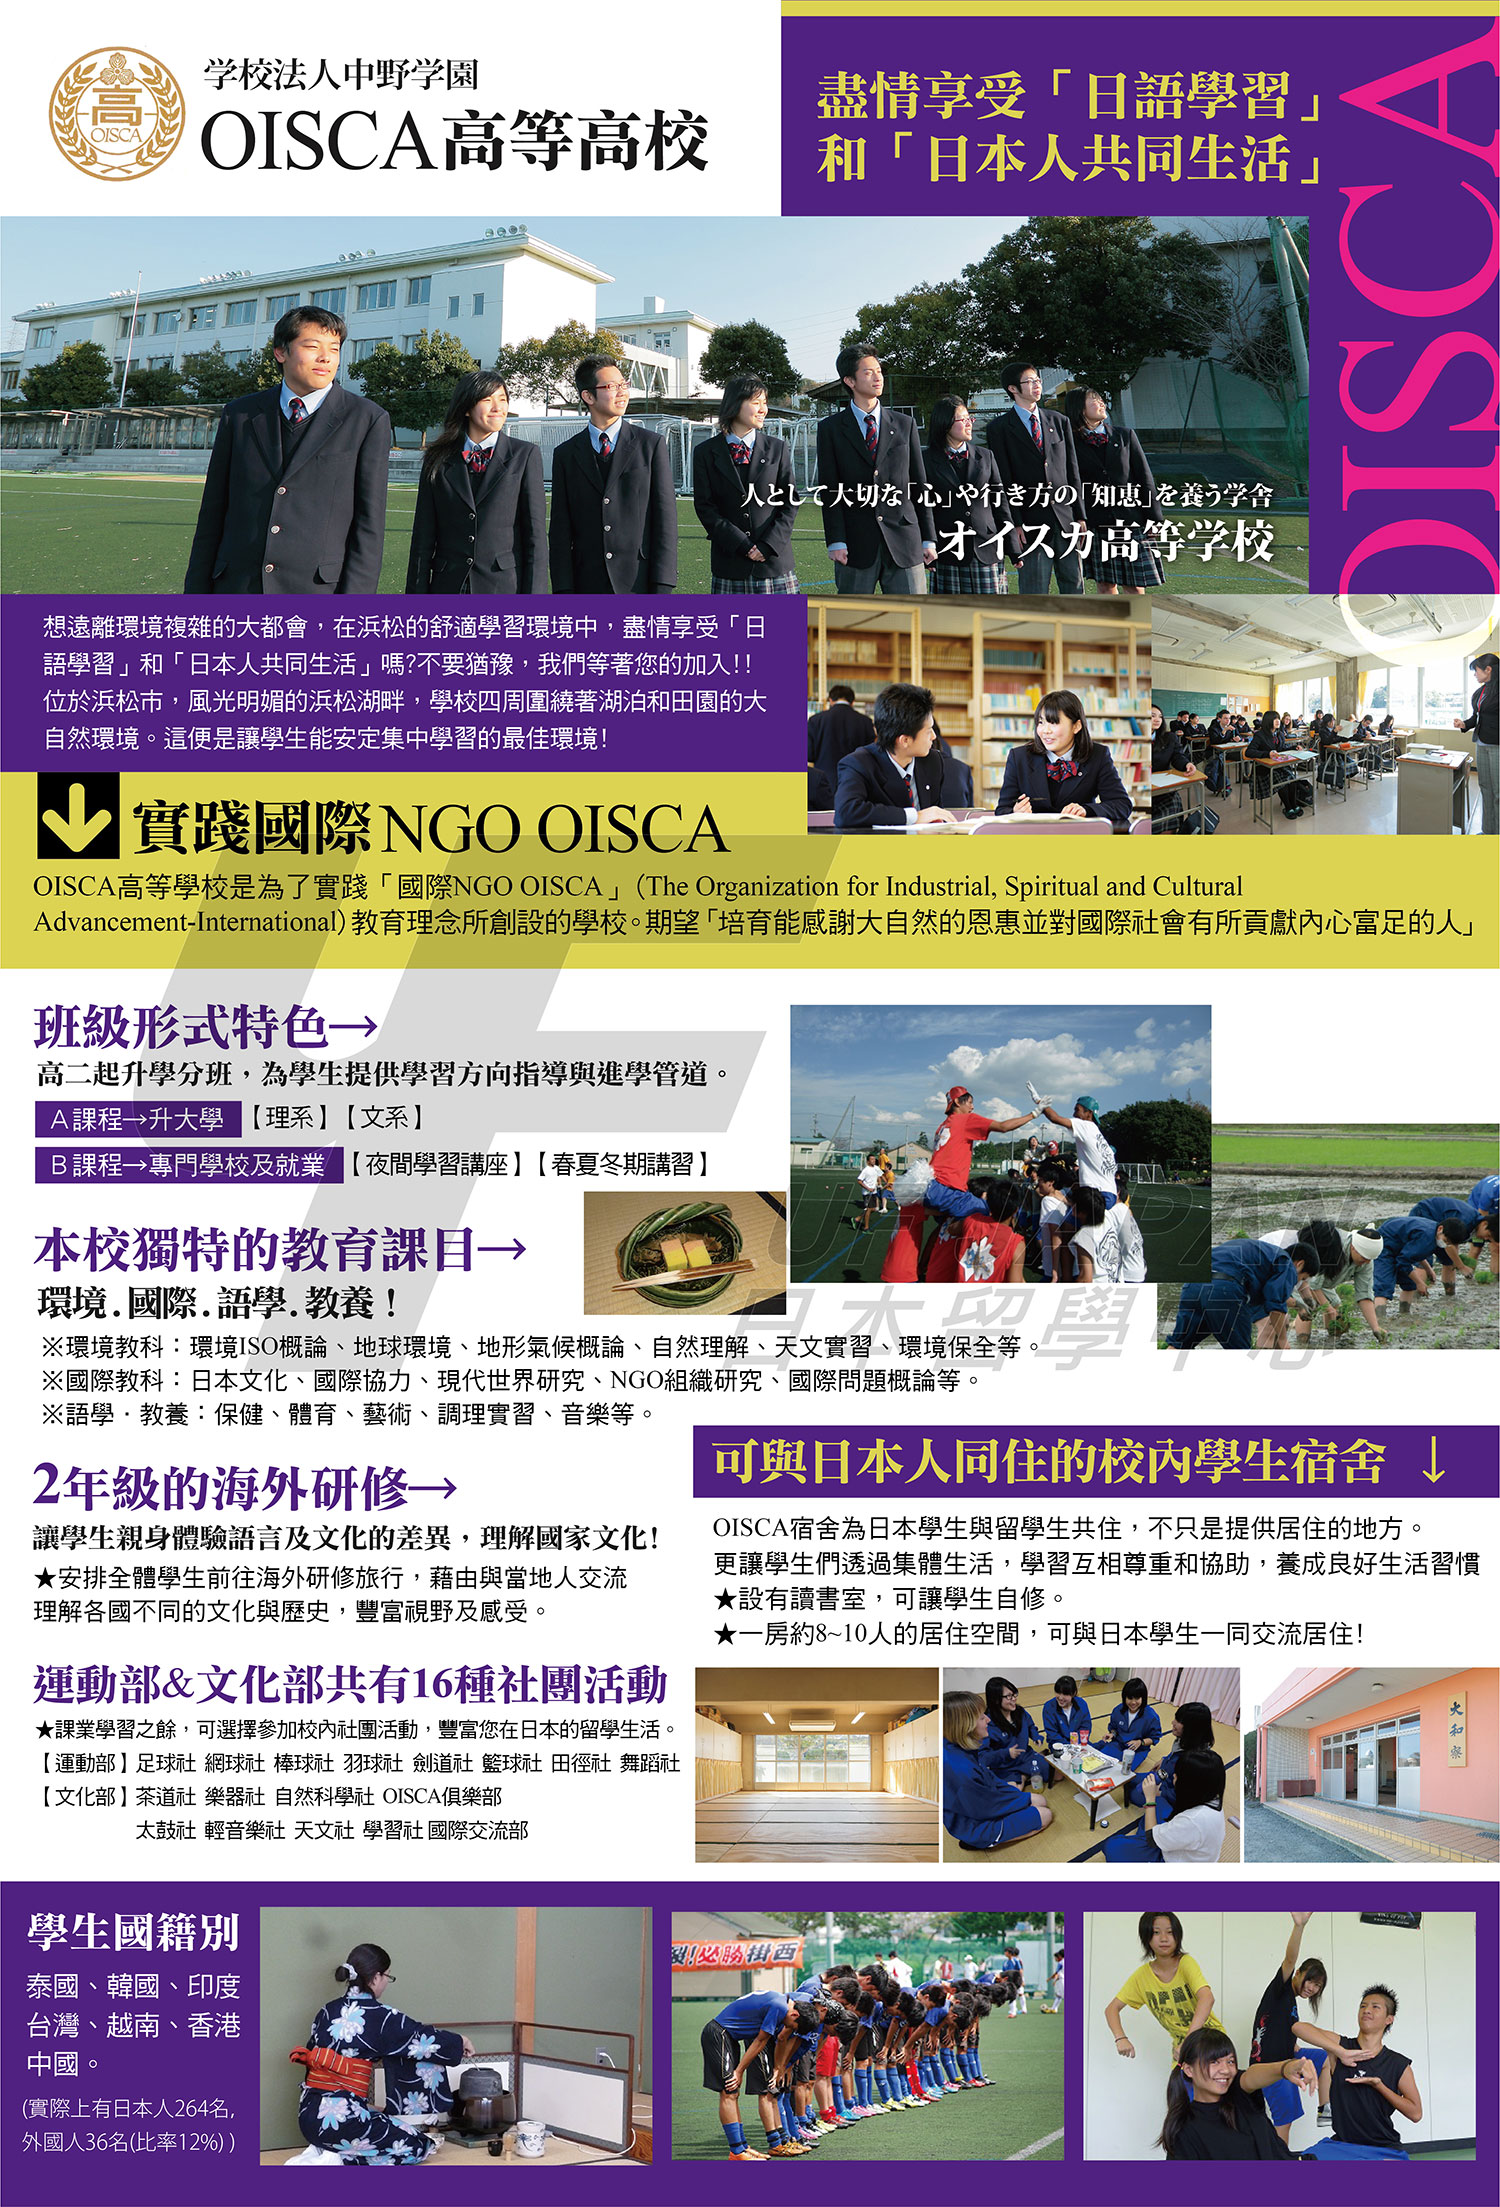 2016日本留學展參展單位-OISCA高等學校